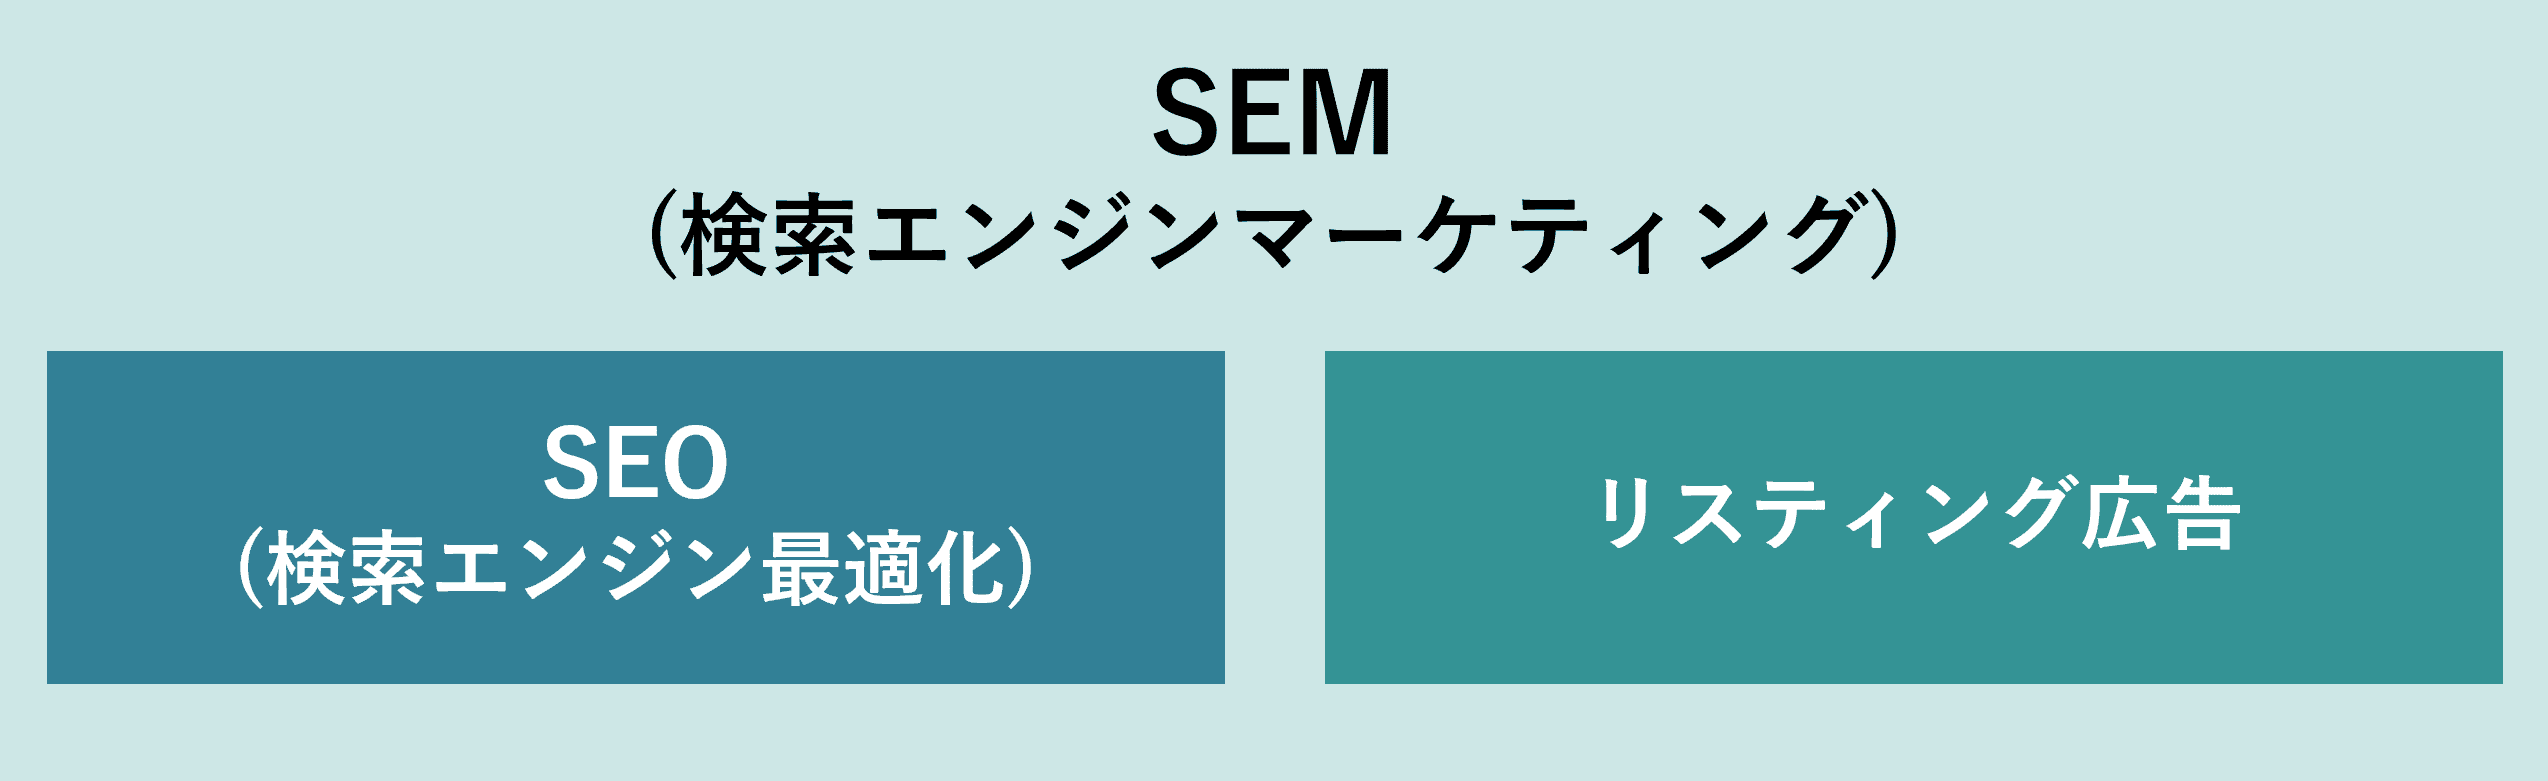 SEM(検索エンジンマーケティング)とは